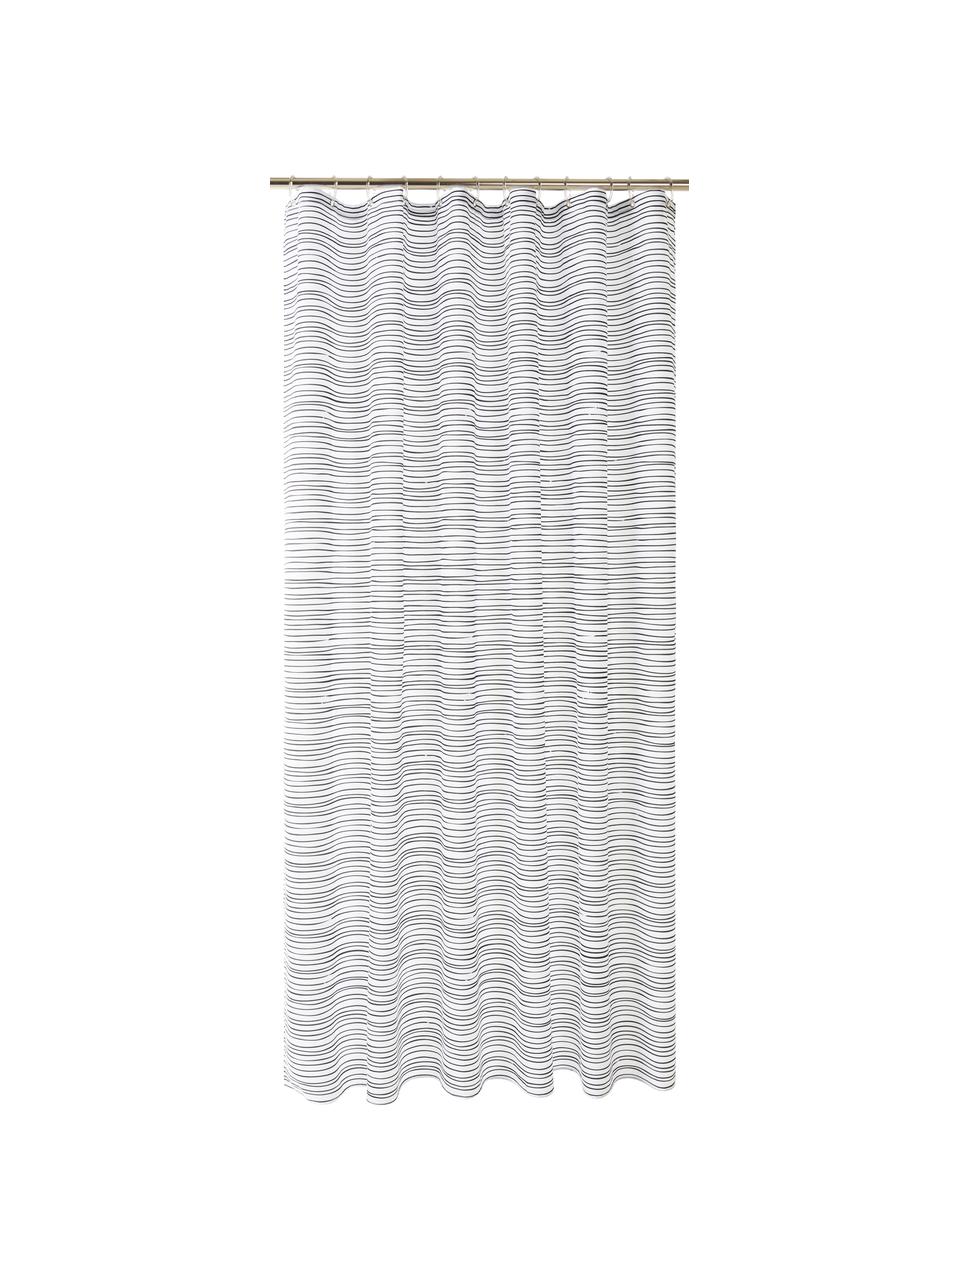 Duschvorhang Ystad, 100% Polyester
Wasserabweisend, nicht wasserdicht, Weiß, Schwarz, 180 x 200 cm